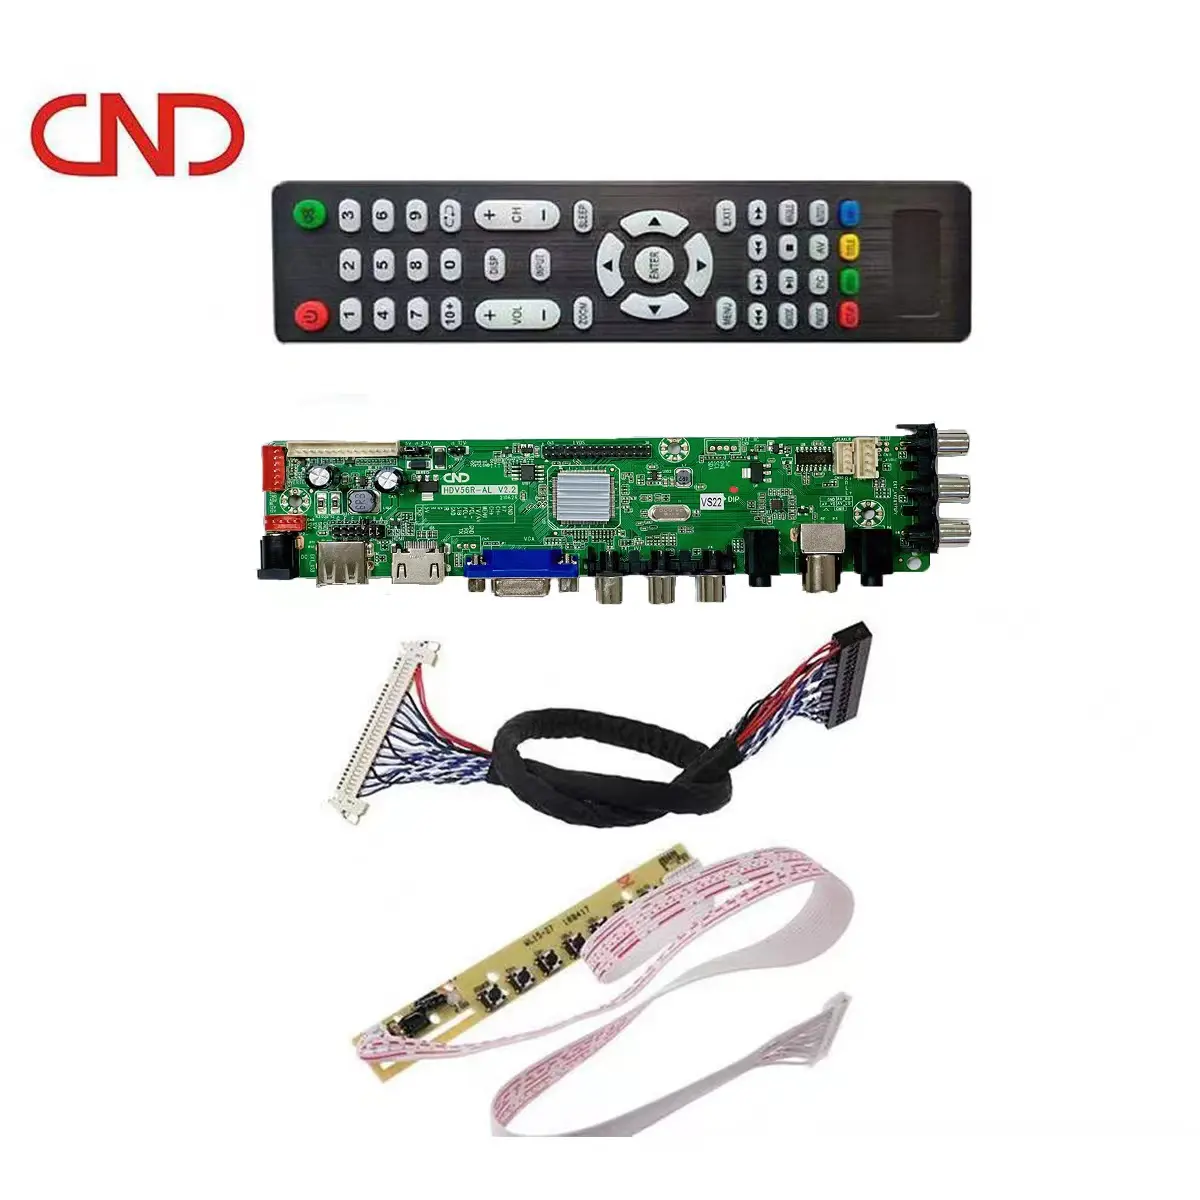 CND bester Preis lcd-Hauptplatine für Fernseher v56 universelles LED-TV-Spring-Hauptboard